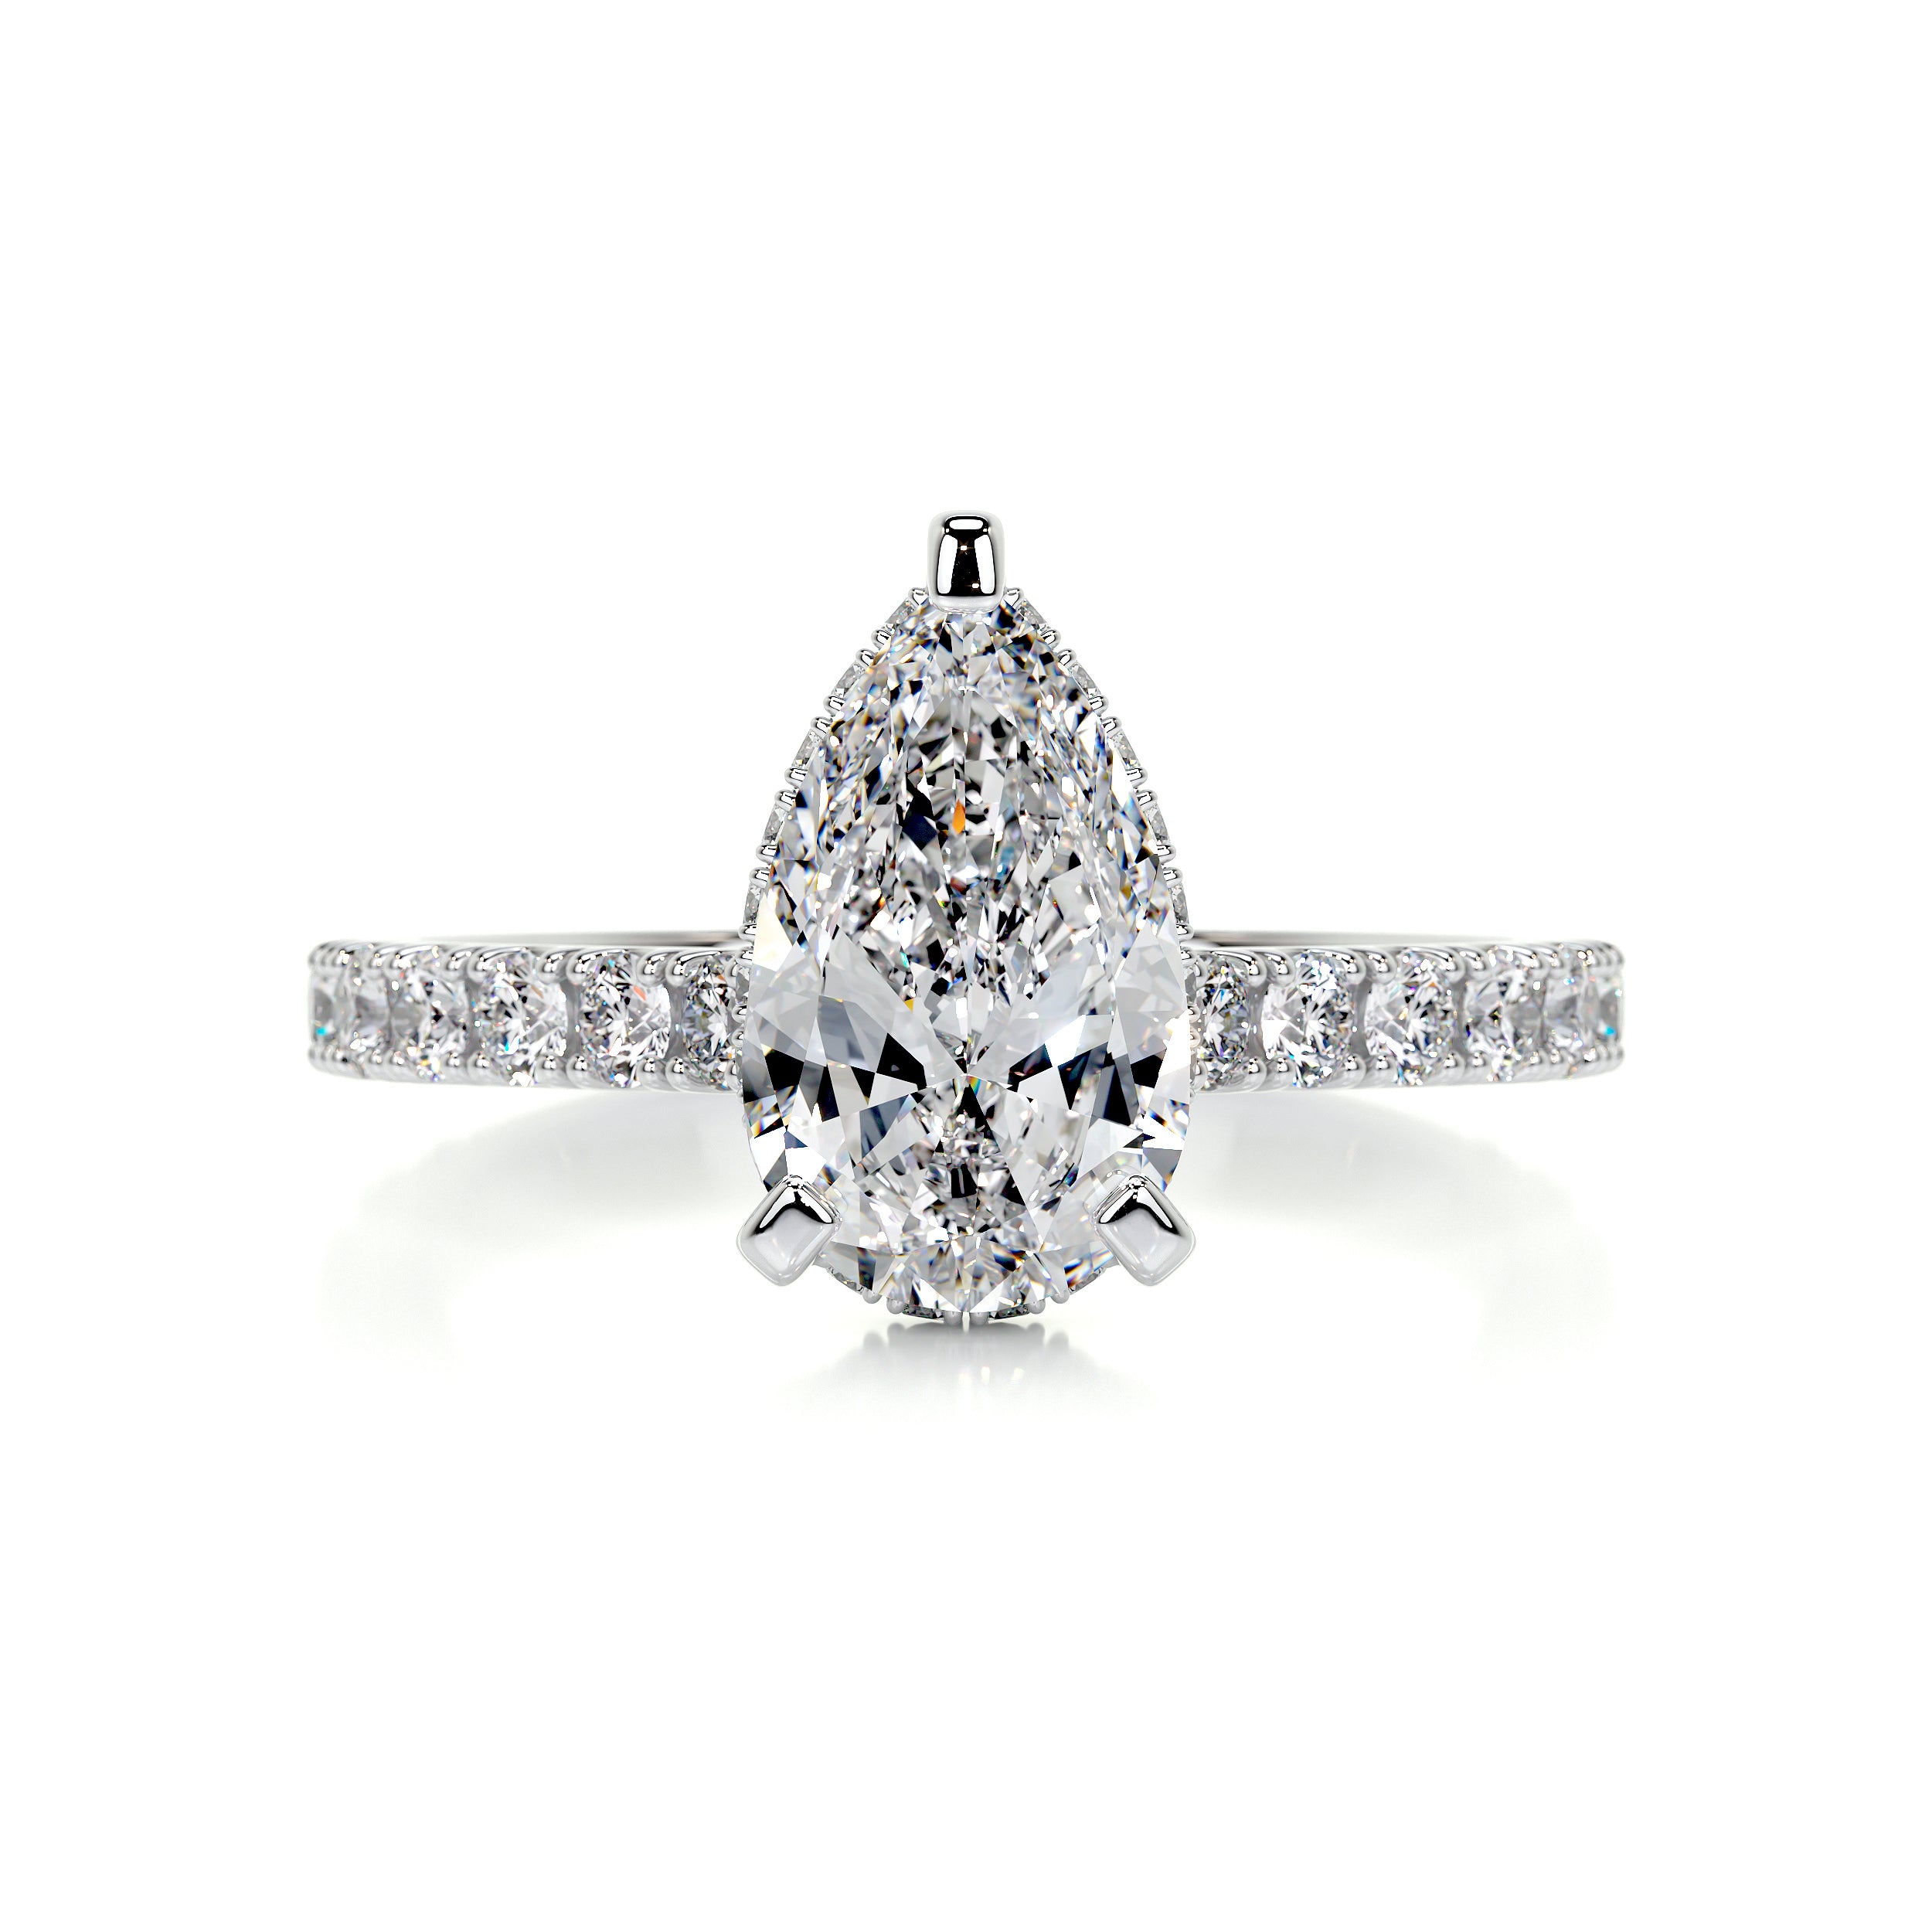 Mia Diamond Engagement Ring   (2 Carat) -Platinum